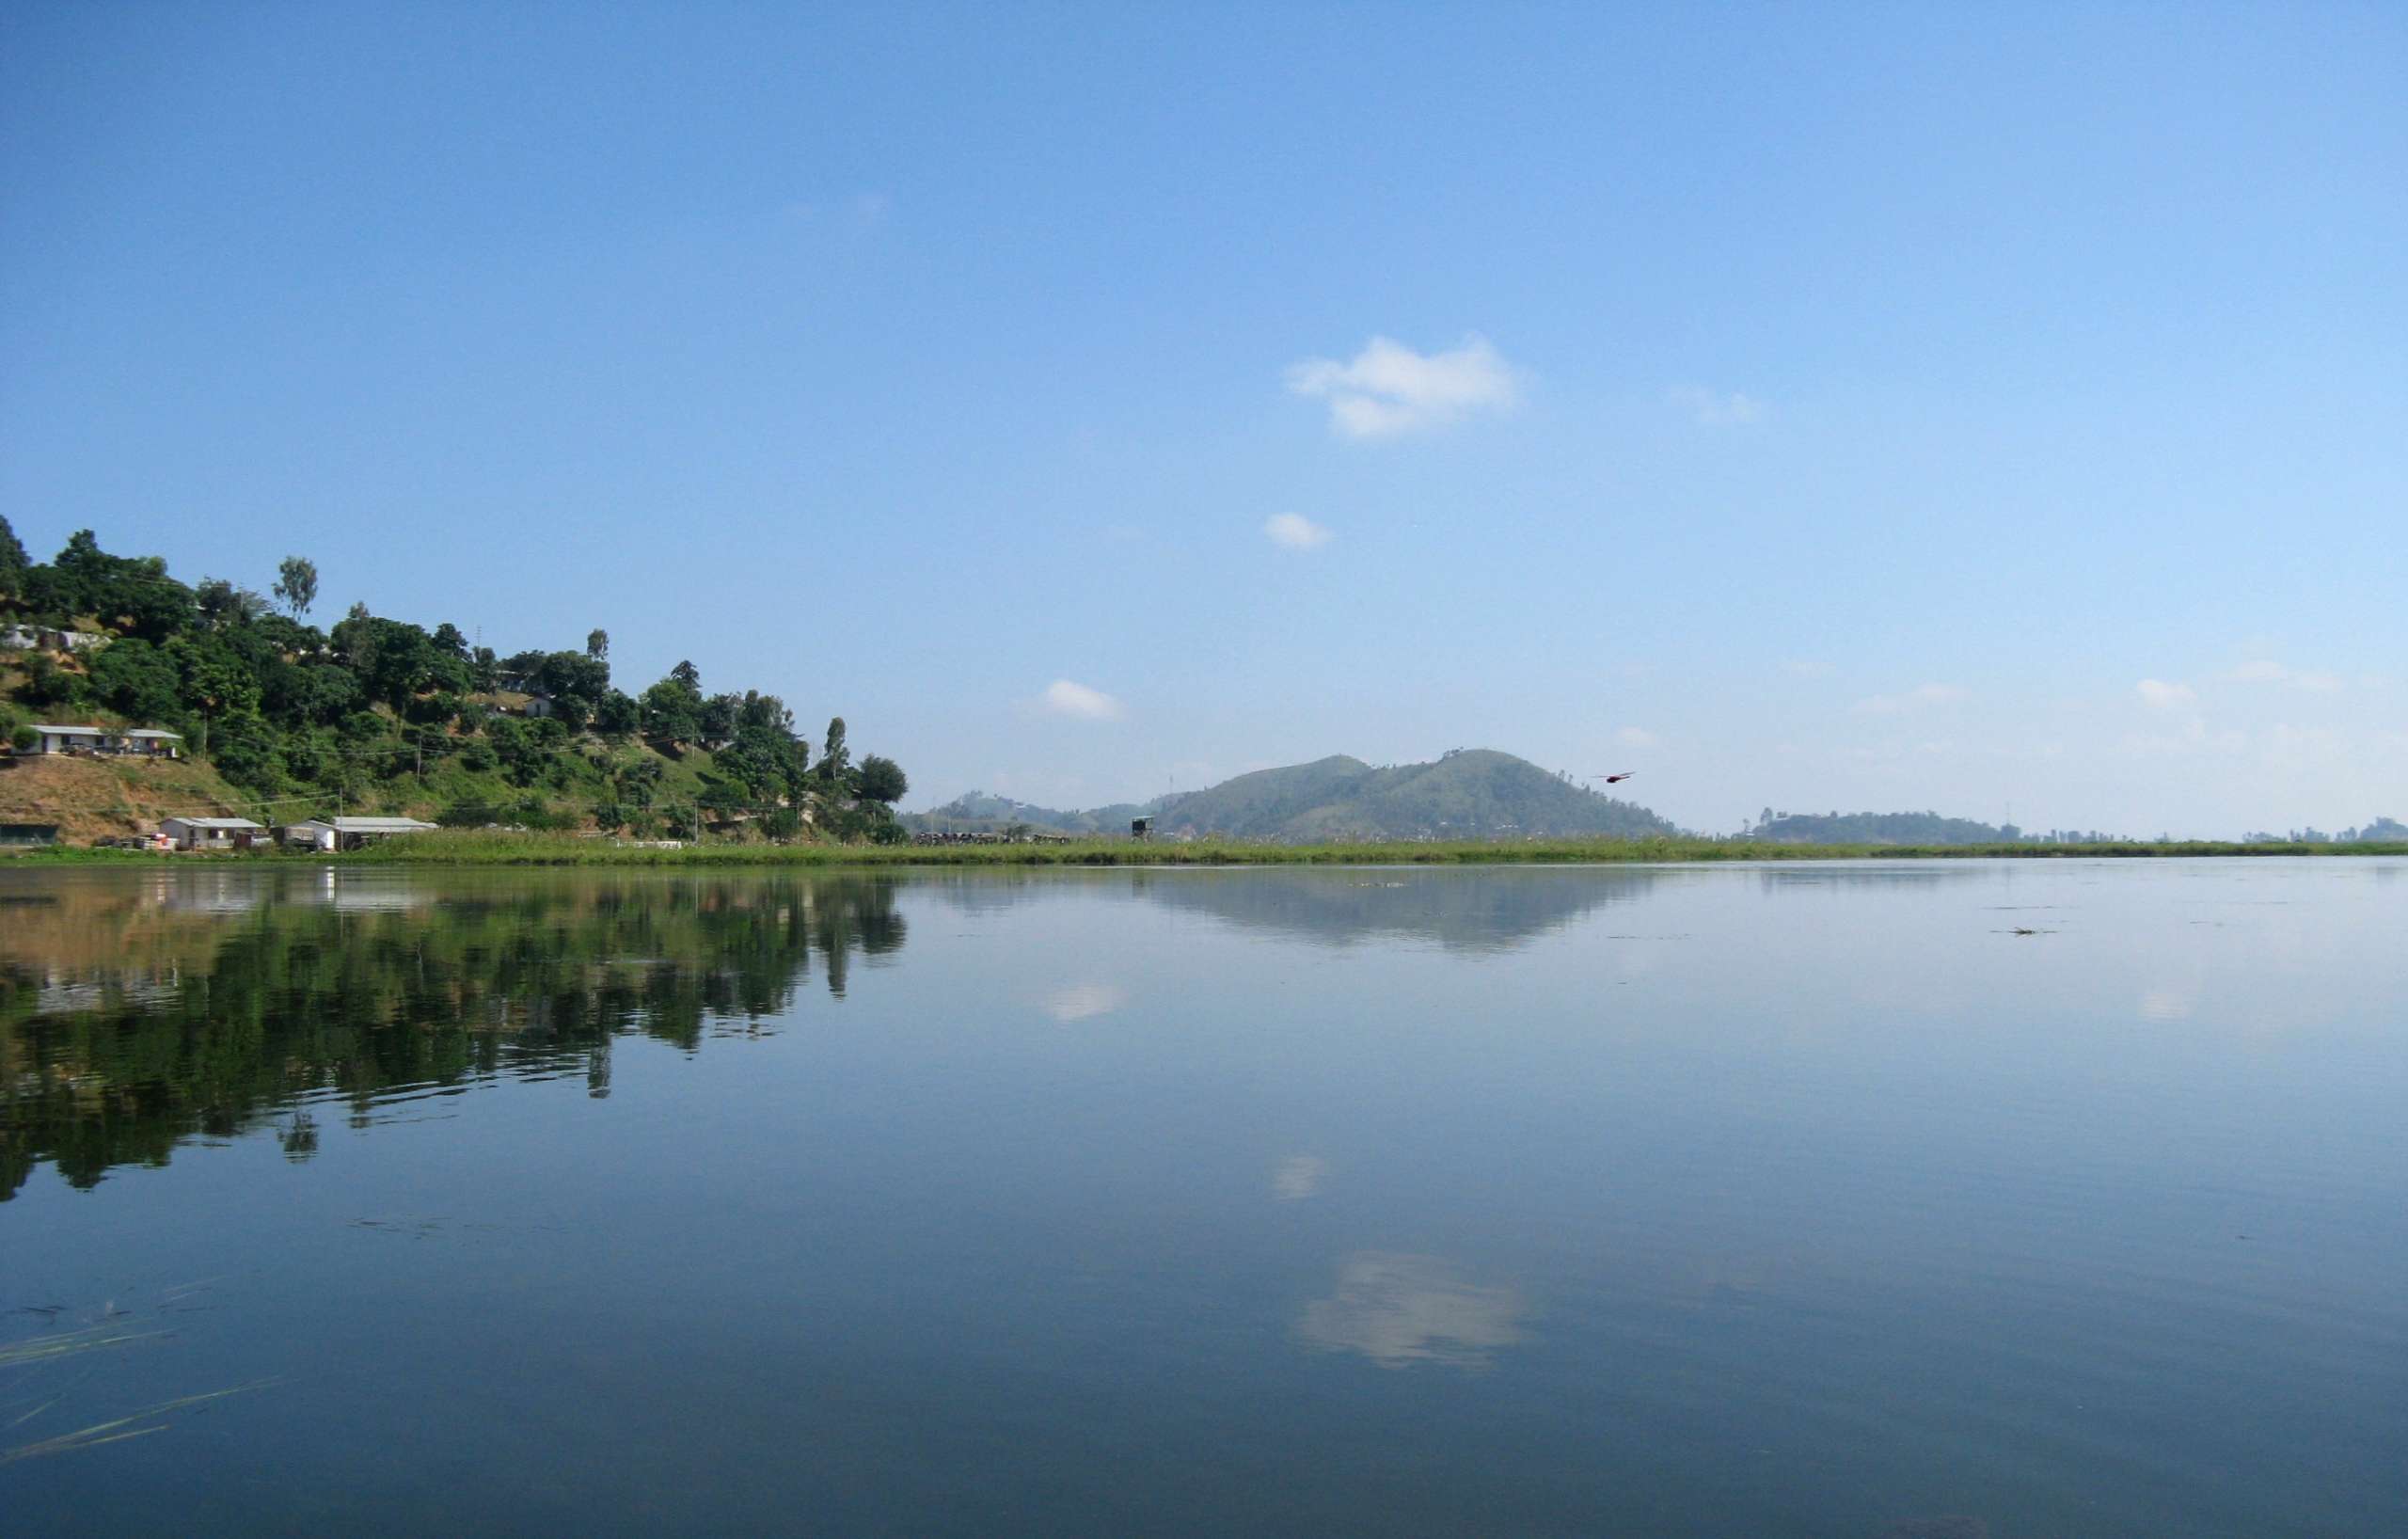 Loktak Lake, Manipur